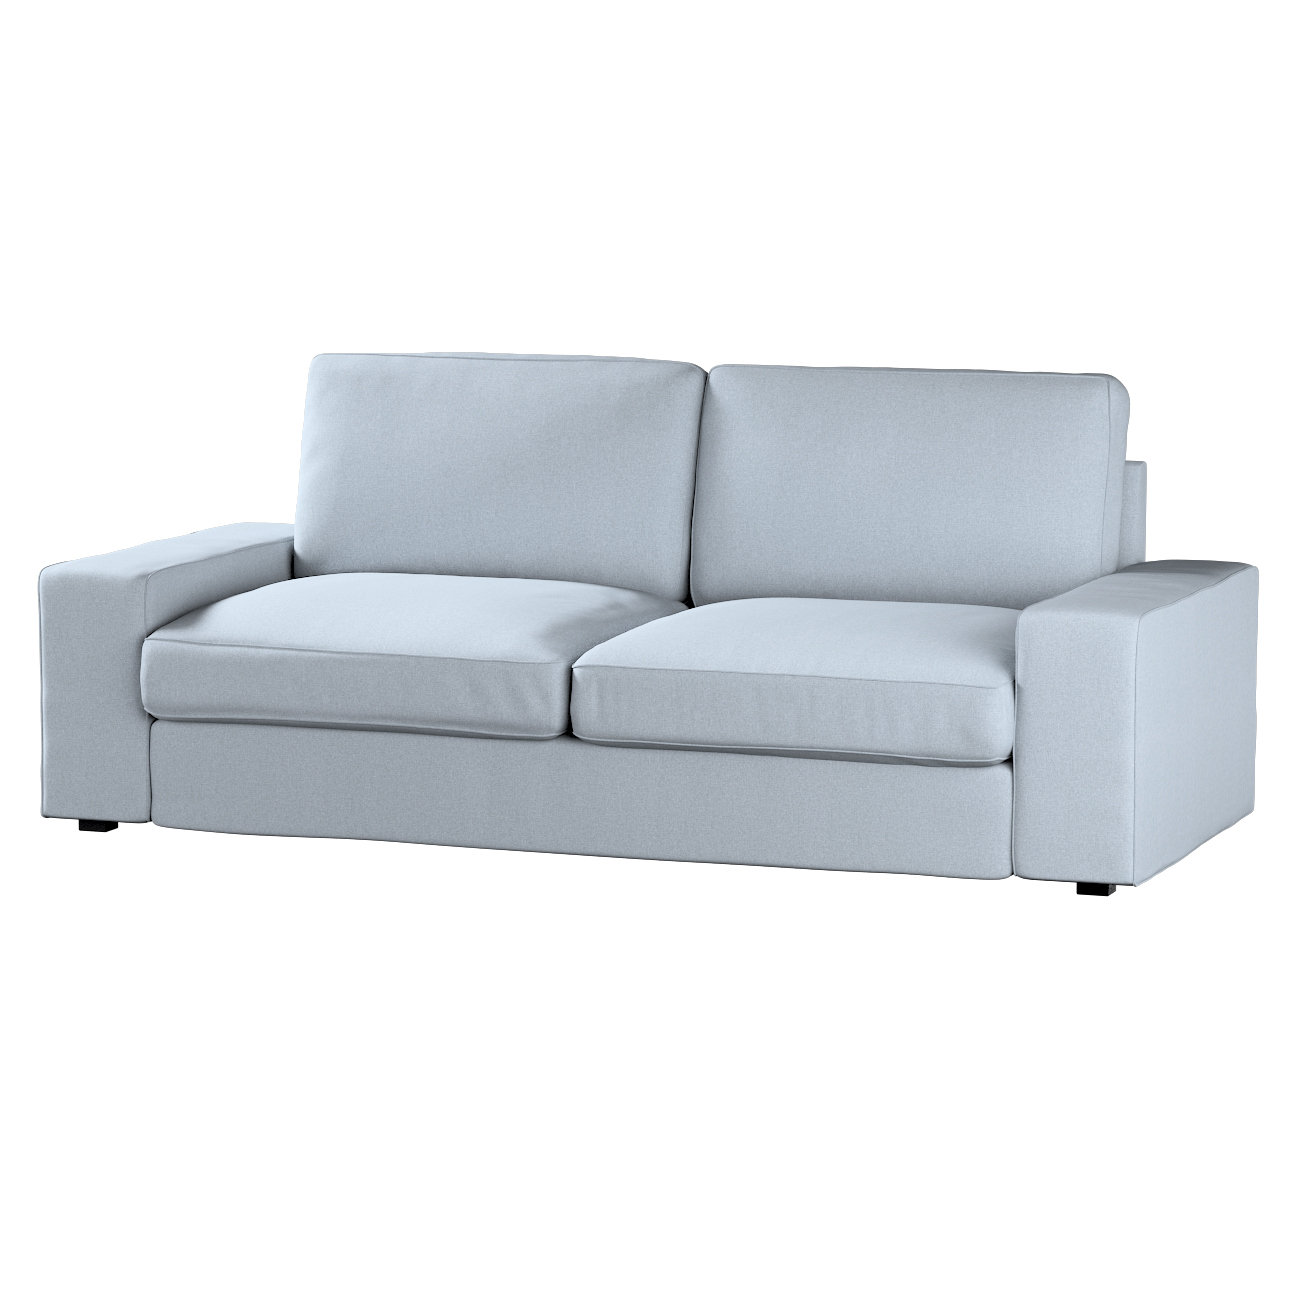 Bezug für Kivik 3-Sitzer Sofa, steingrau, Bezug für Sofa Kivik 3-Sitzer, Am günstig online kaufen